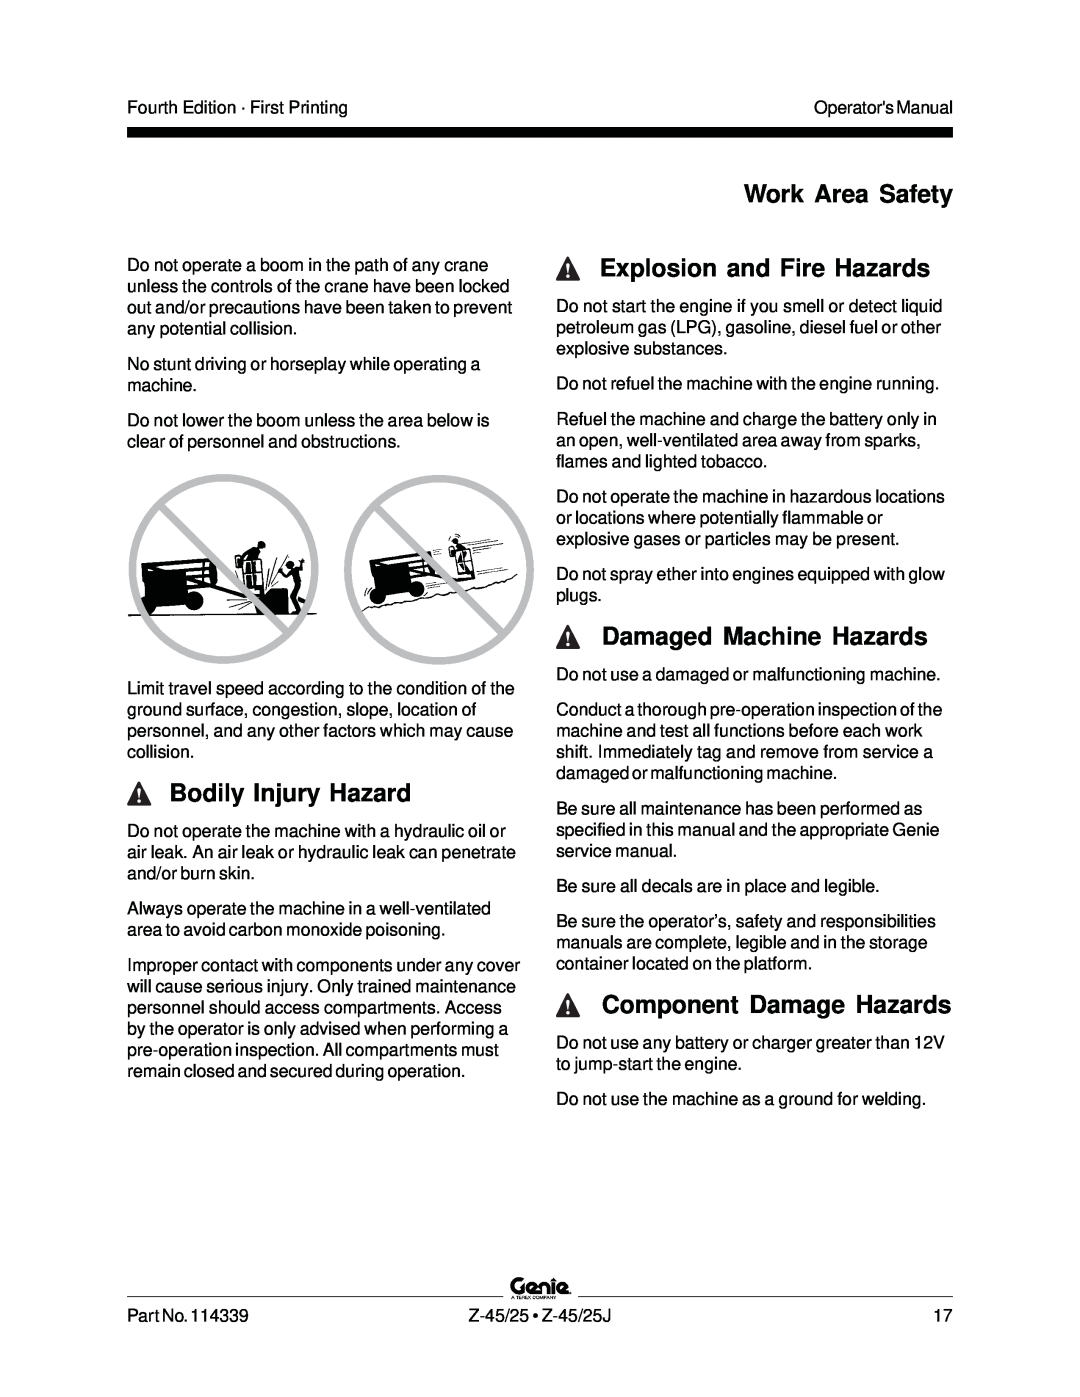 Genie Z-45, Z-25J manual Bodily Injury Hazard, Work Area Safety Explosion and Fire Hazards, Damaged Machine Hazards 